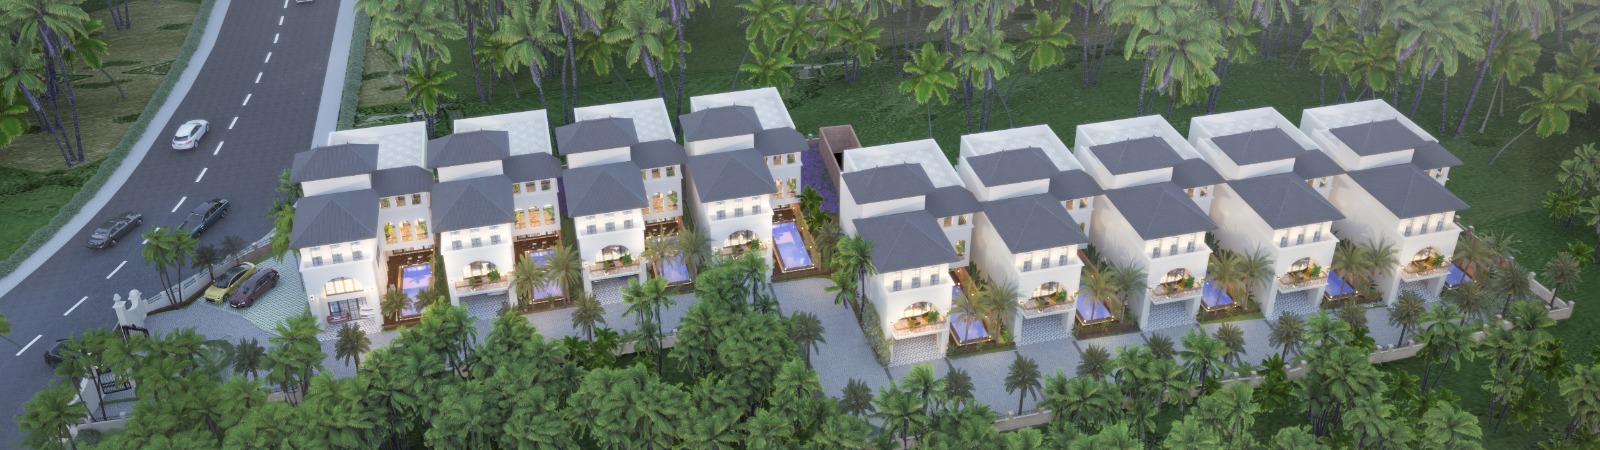 Villas for Sale in Goa